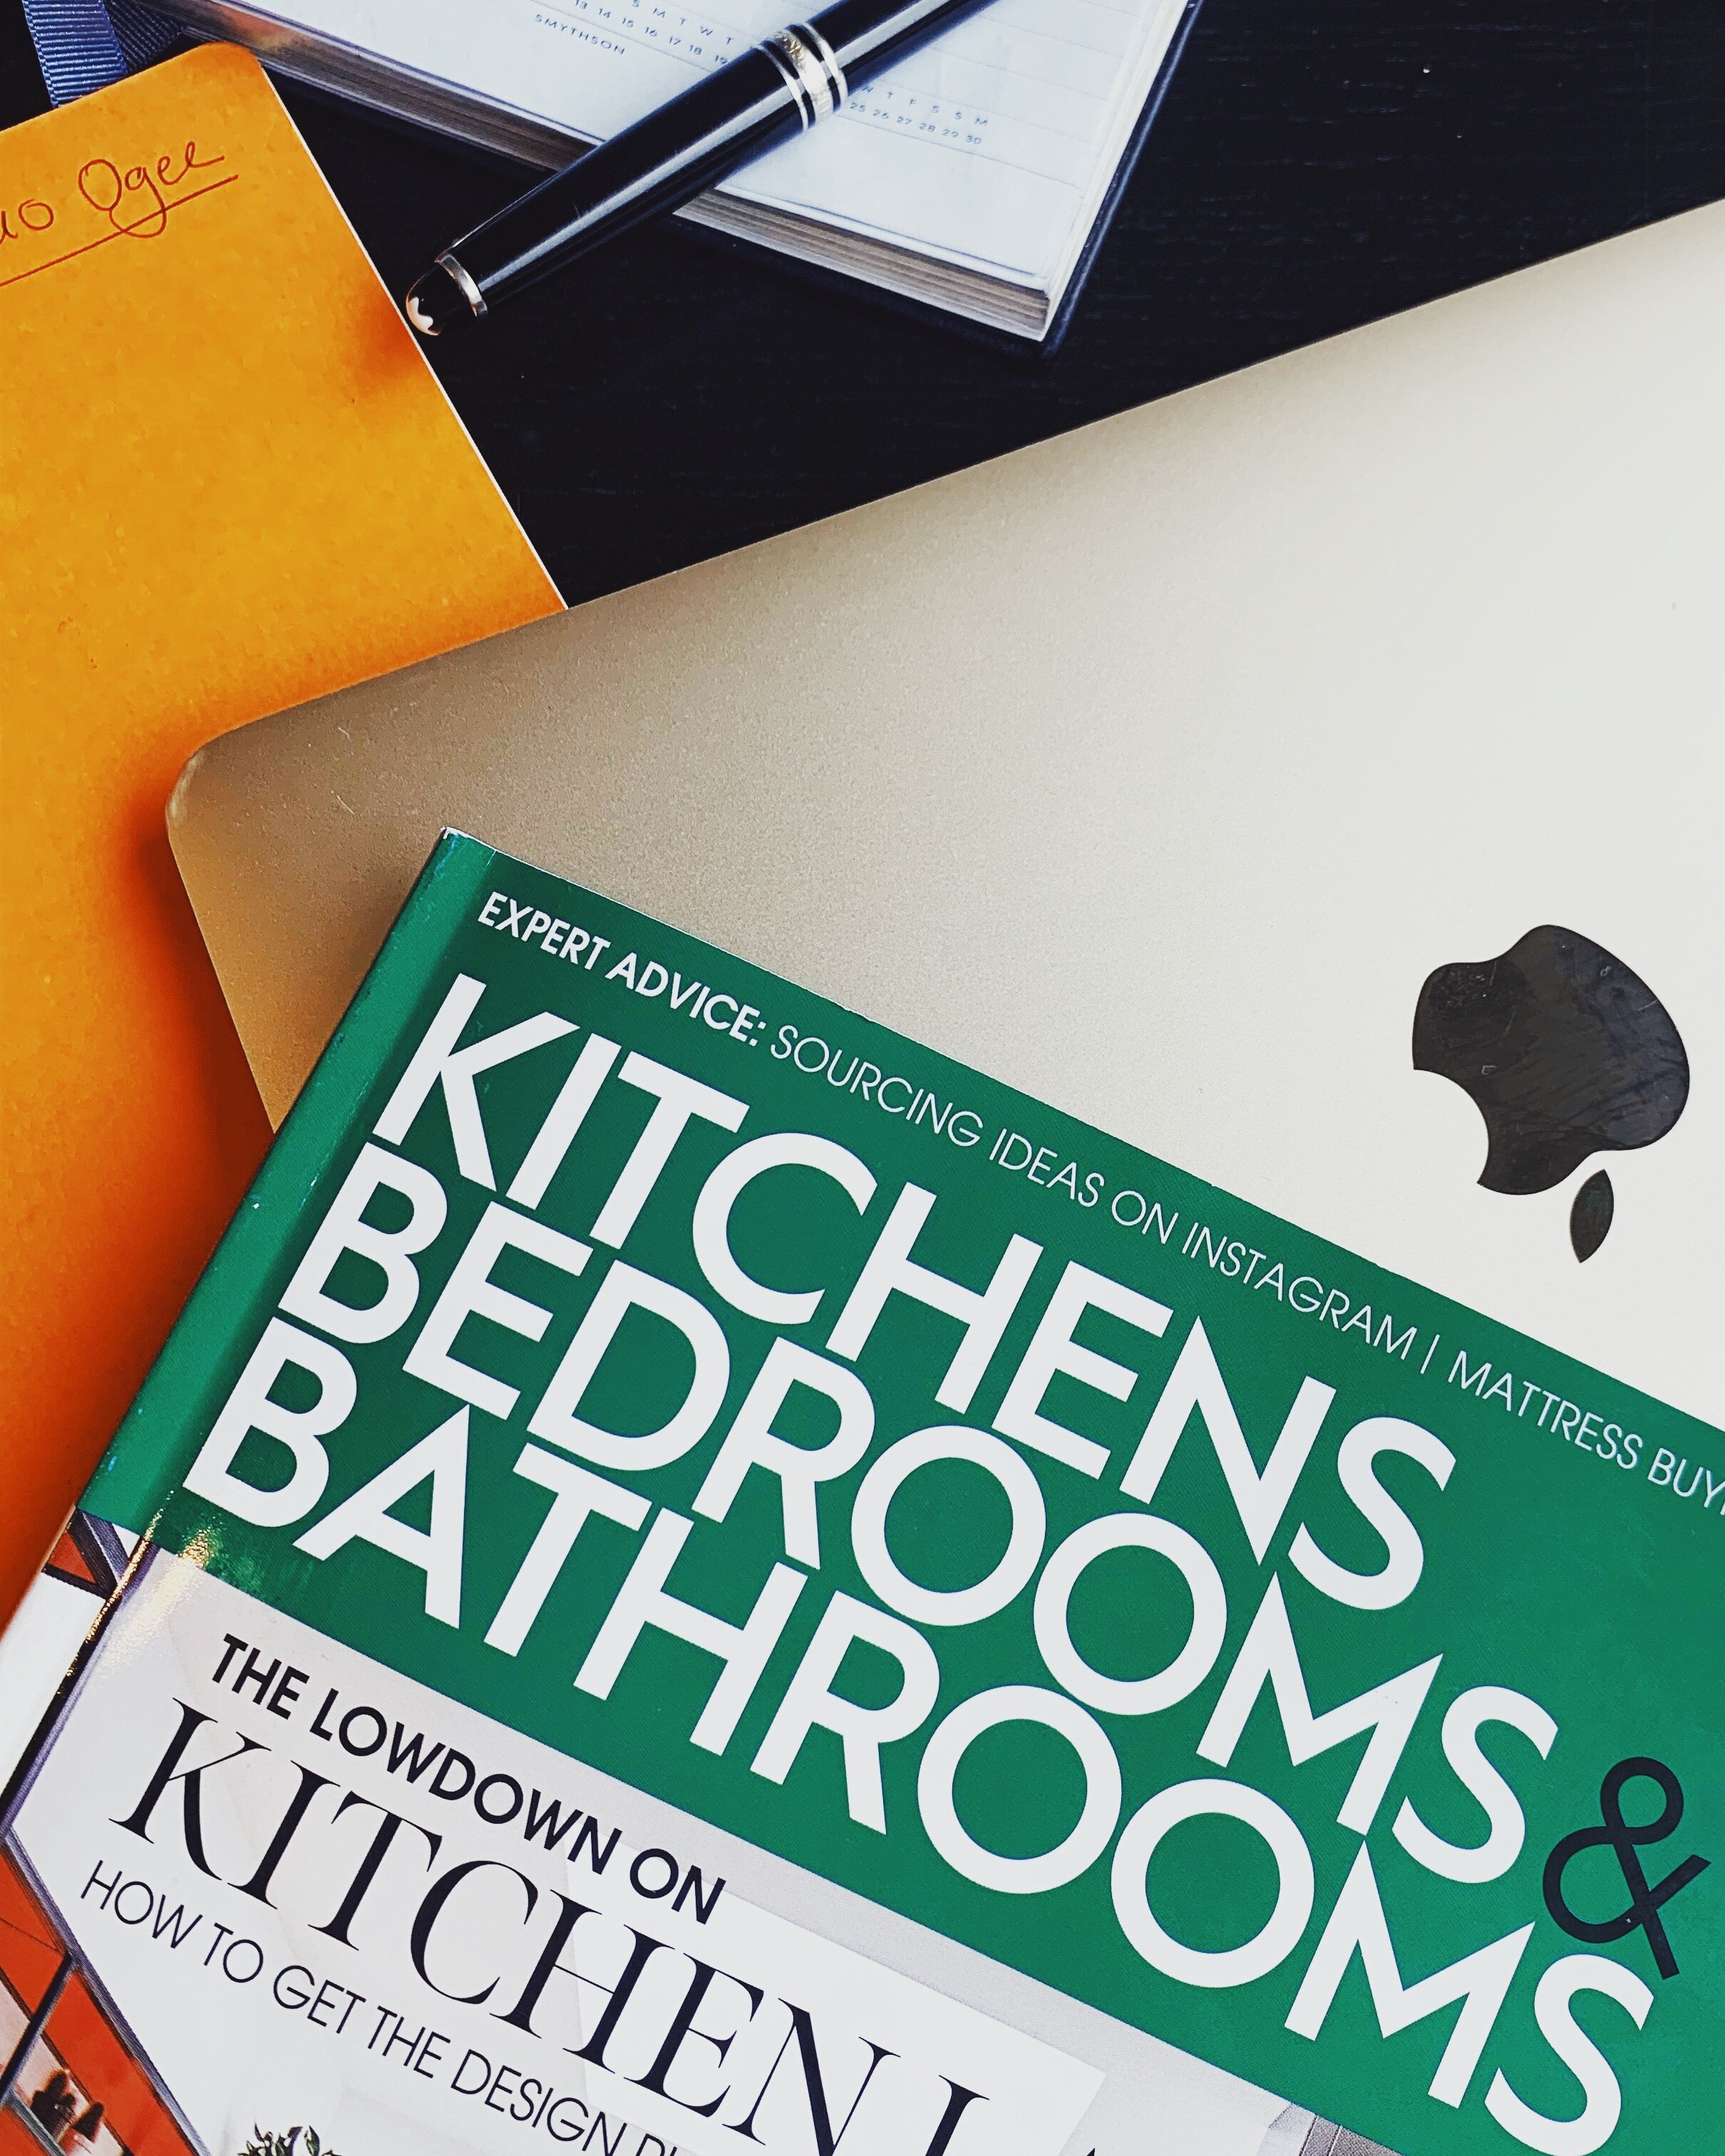 Kitchen Bedroom Bathroom, Oct-19 